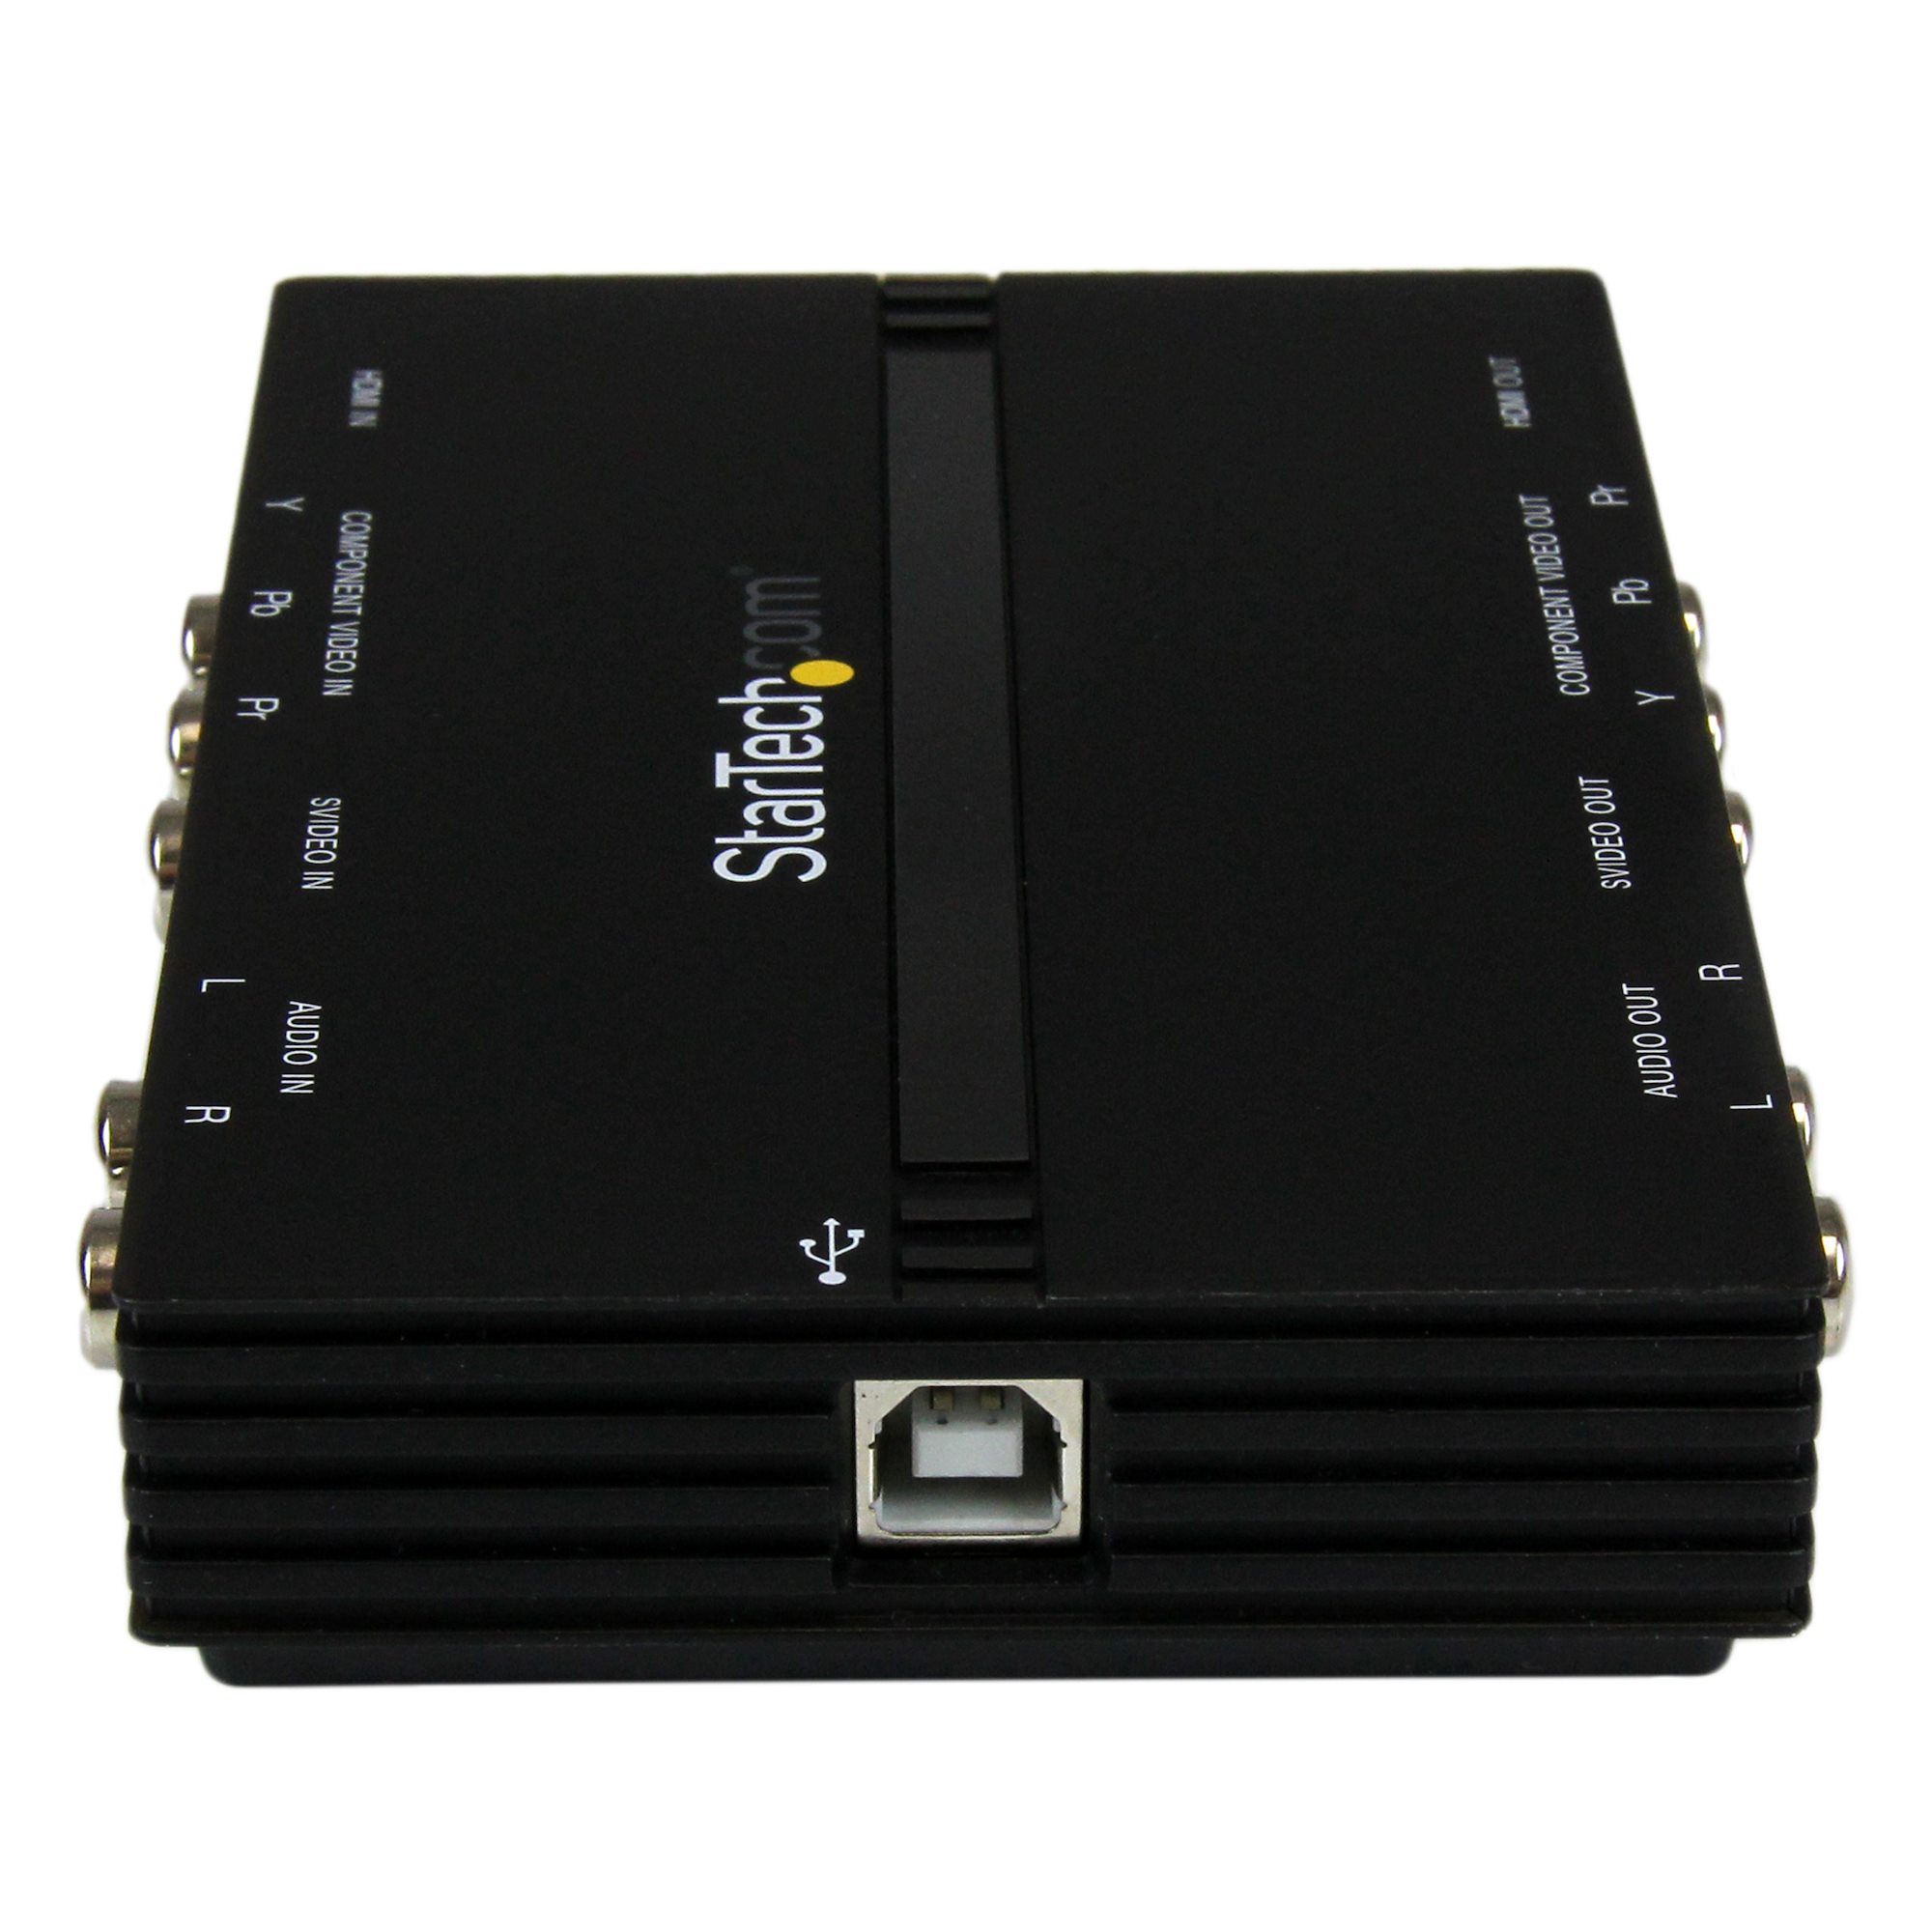 Startech - Boîtier d'acquisition vidéo HD USB 3.0 - Enregistreur vidéo HDMI  / DVI / VGA / Composant - 1080p - 60fps - Boitier d'acquisition - Rue du  Commerce